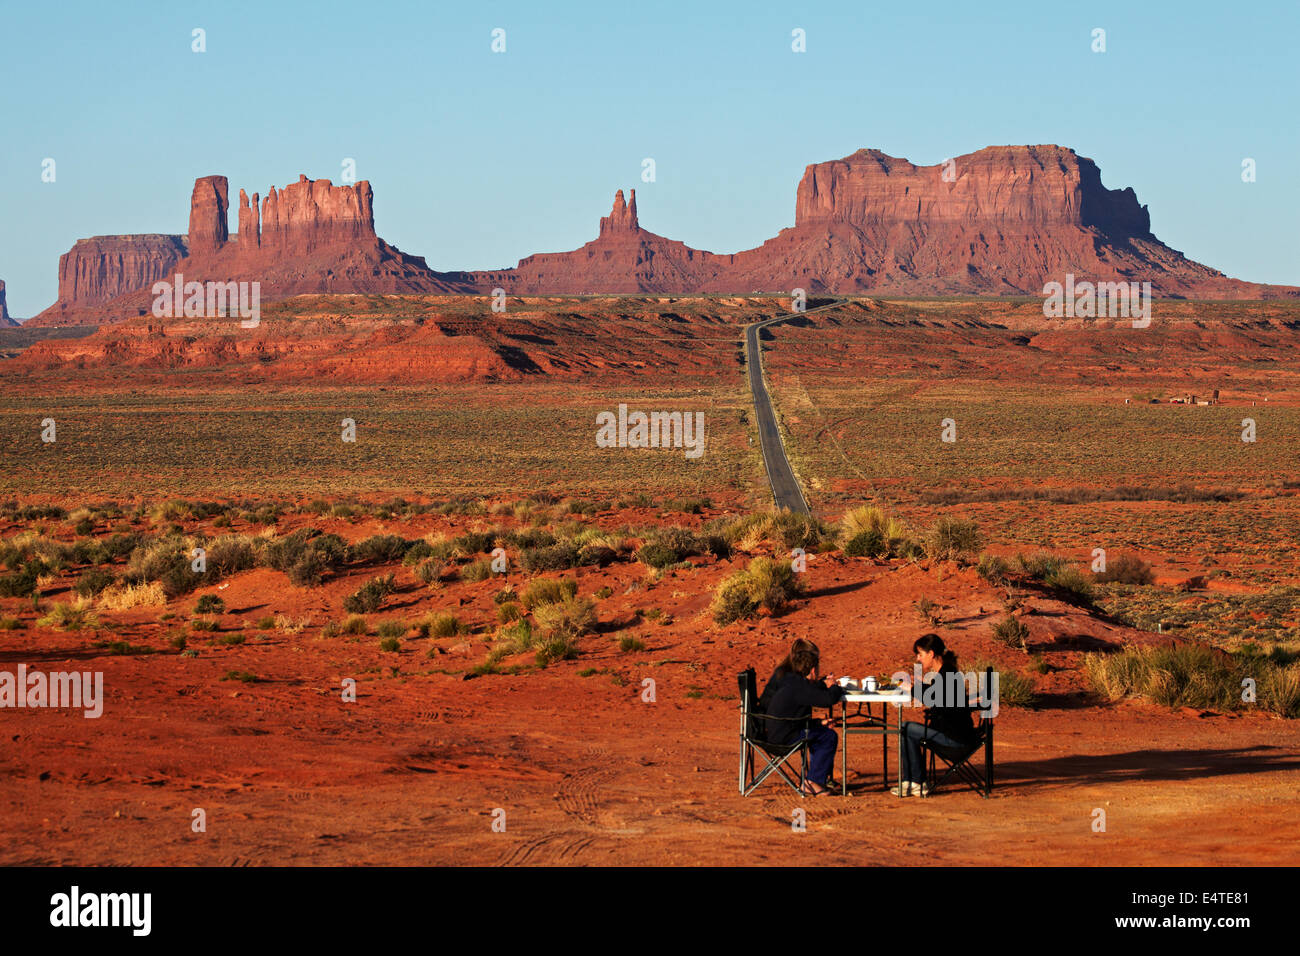 Familie frühstücken neben US Route 163, Monument Valley Navajo Nation, Utah, nahe Grenze zu Arizona, USA Stockfoto